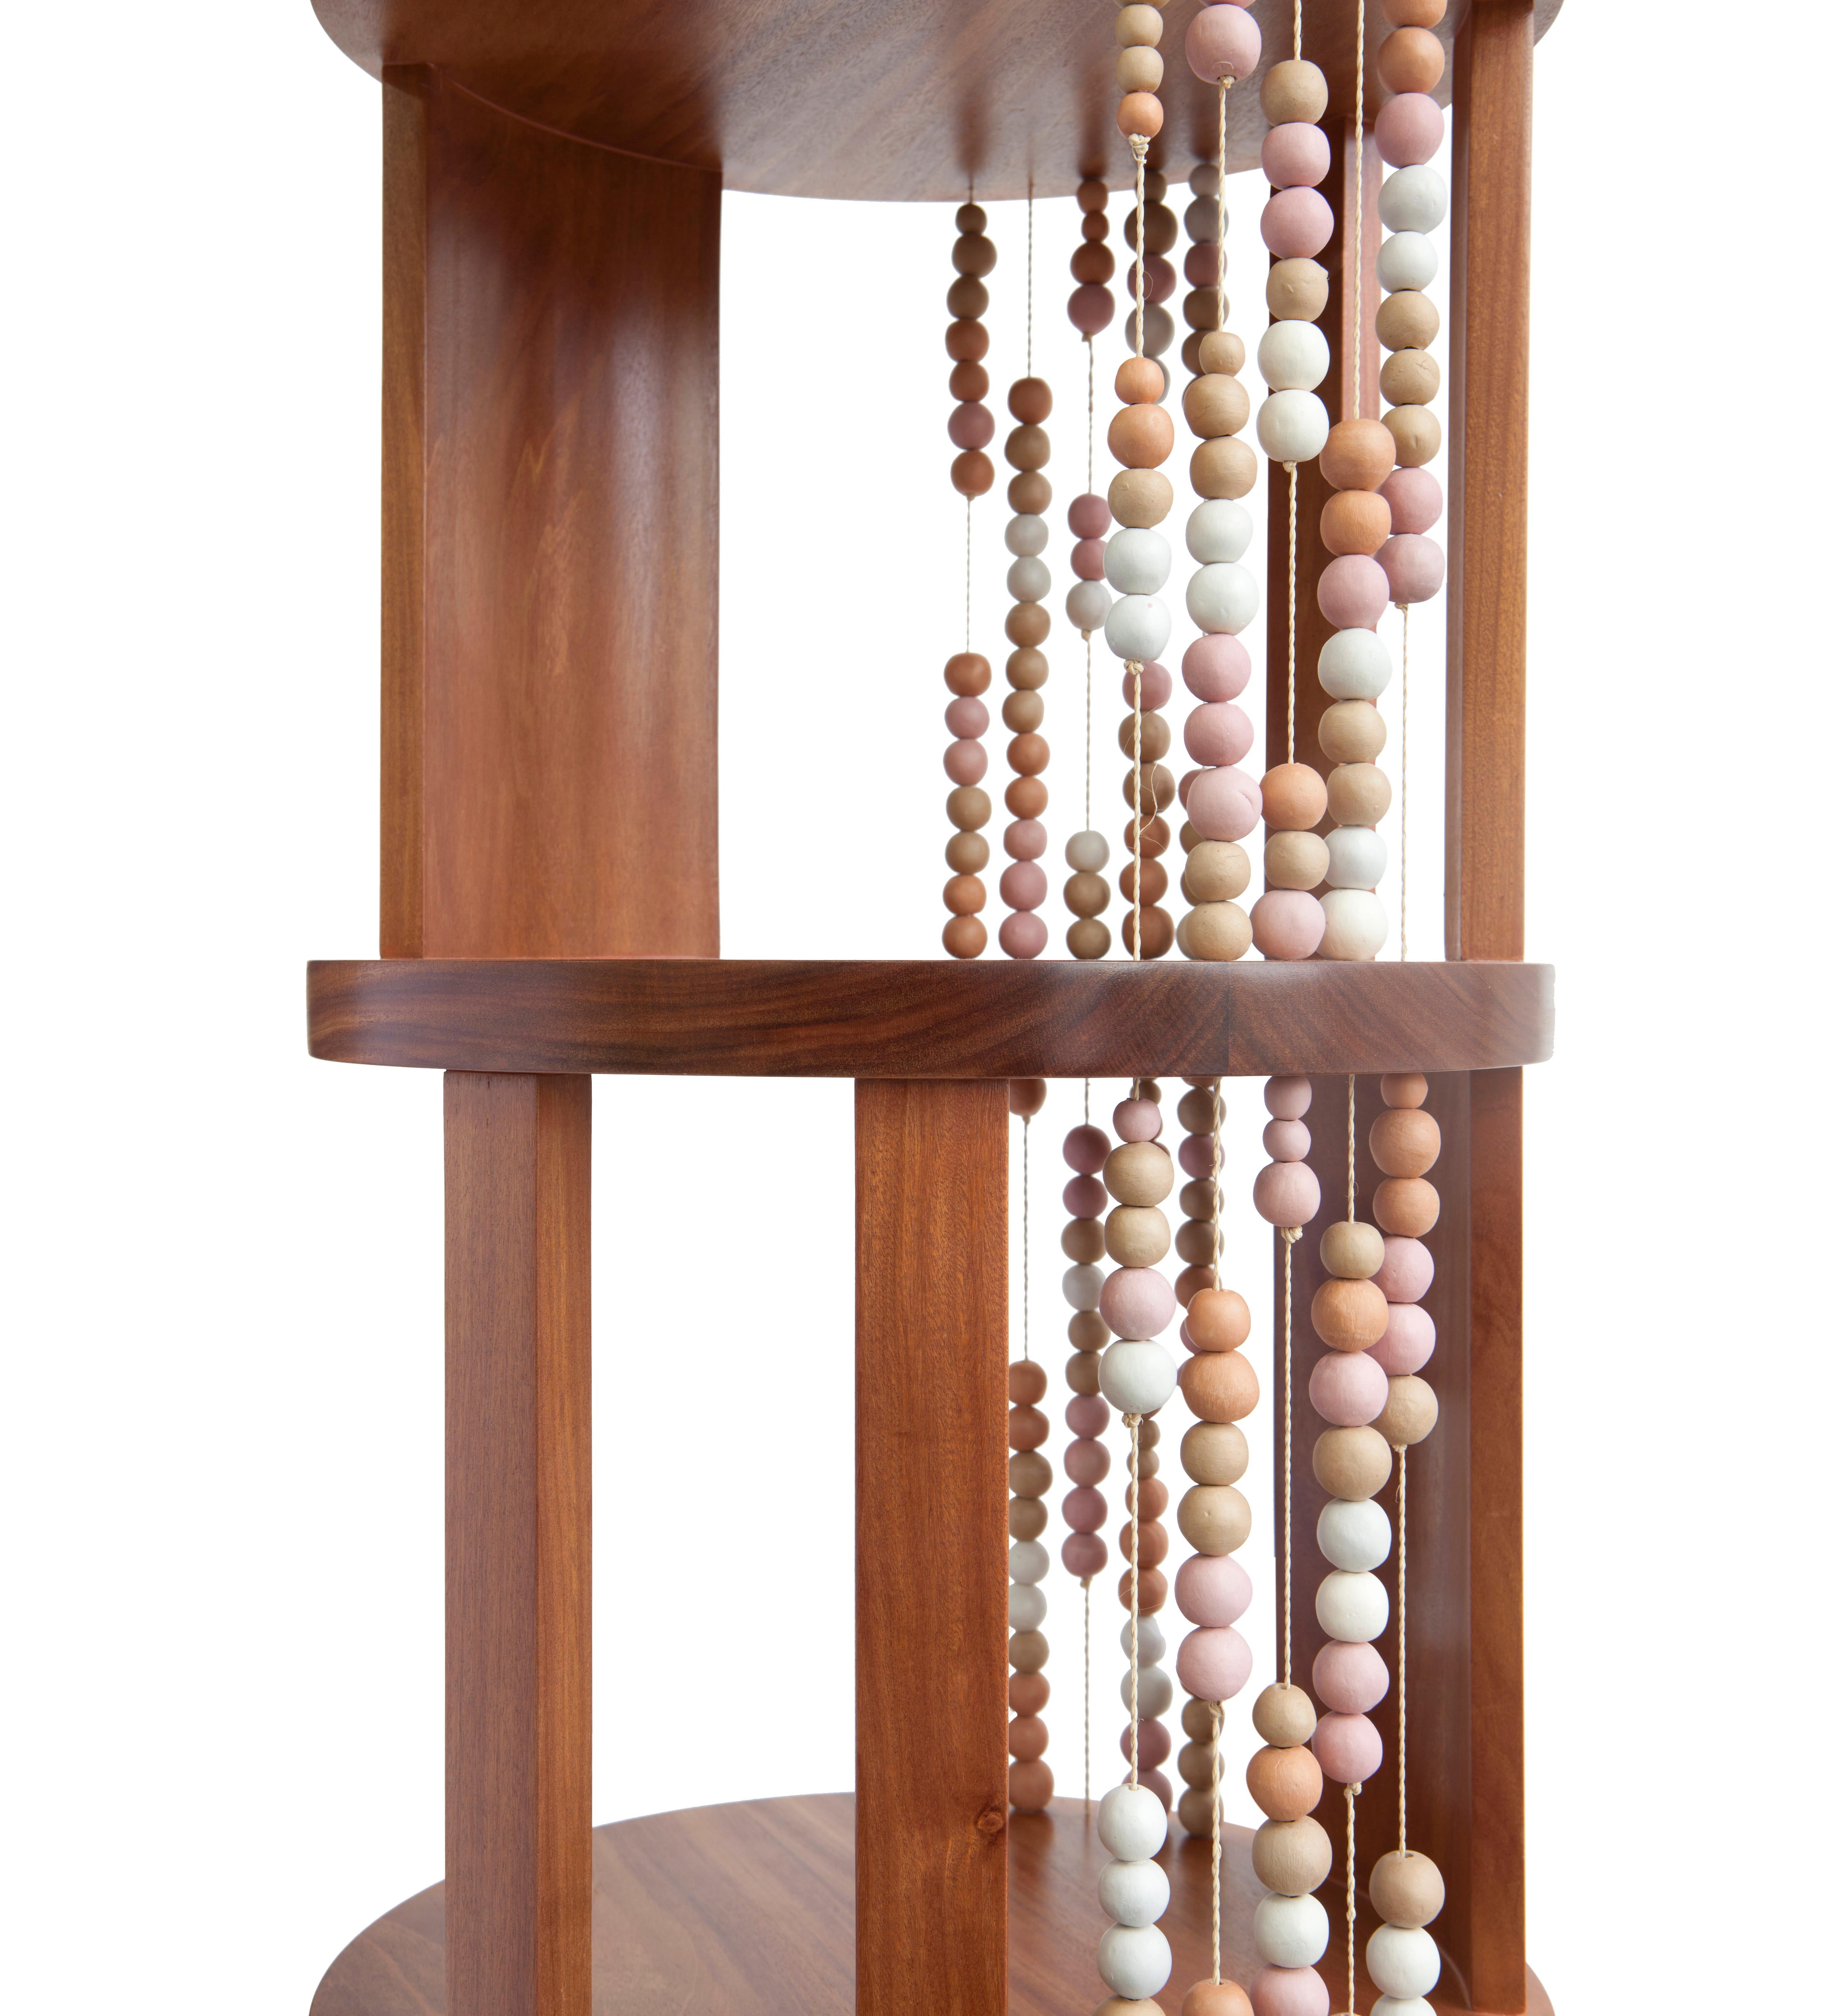 Tous les niveaux de cette bibliothèque ronde, fabriquée en bois dur de cabreuva, sont imprégnés de fils de palmes de buriti avec des perles de céramique, créant ainsi des compositions différentes selon l'angle sous lequel on la regarde. Toutes les